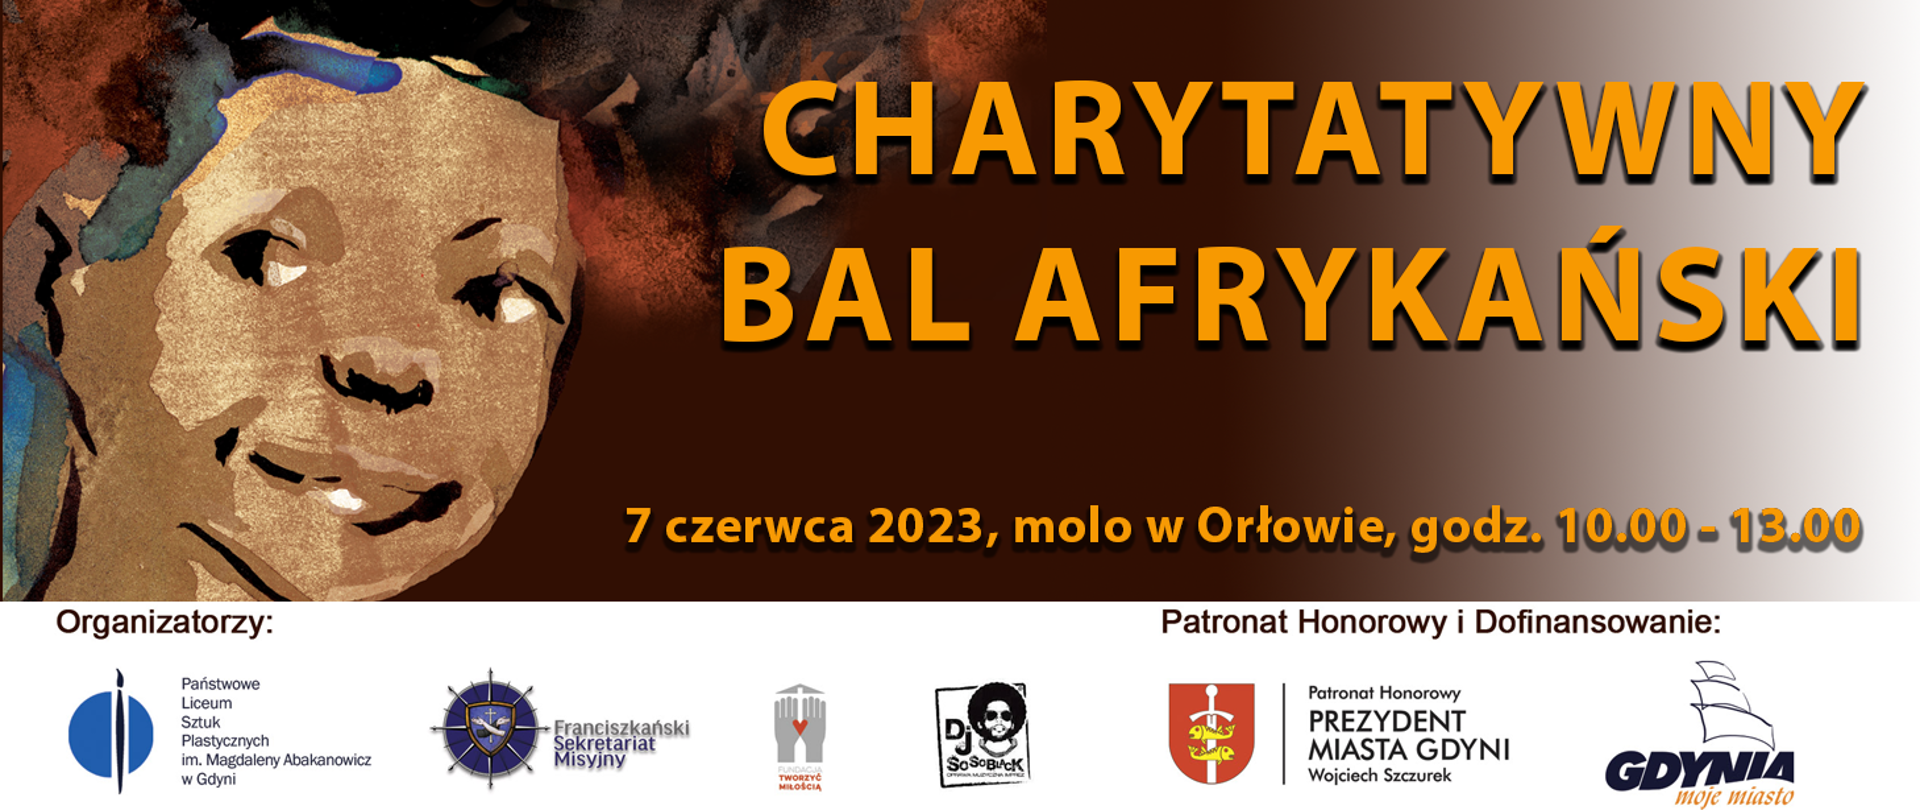 Charytatywny Bal Afrykański, Gdynia Orłowo, 7 czerwca 2023